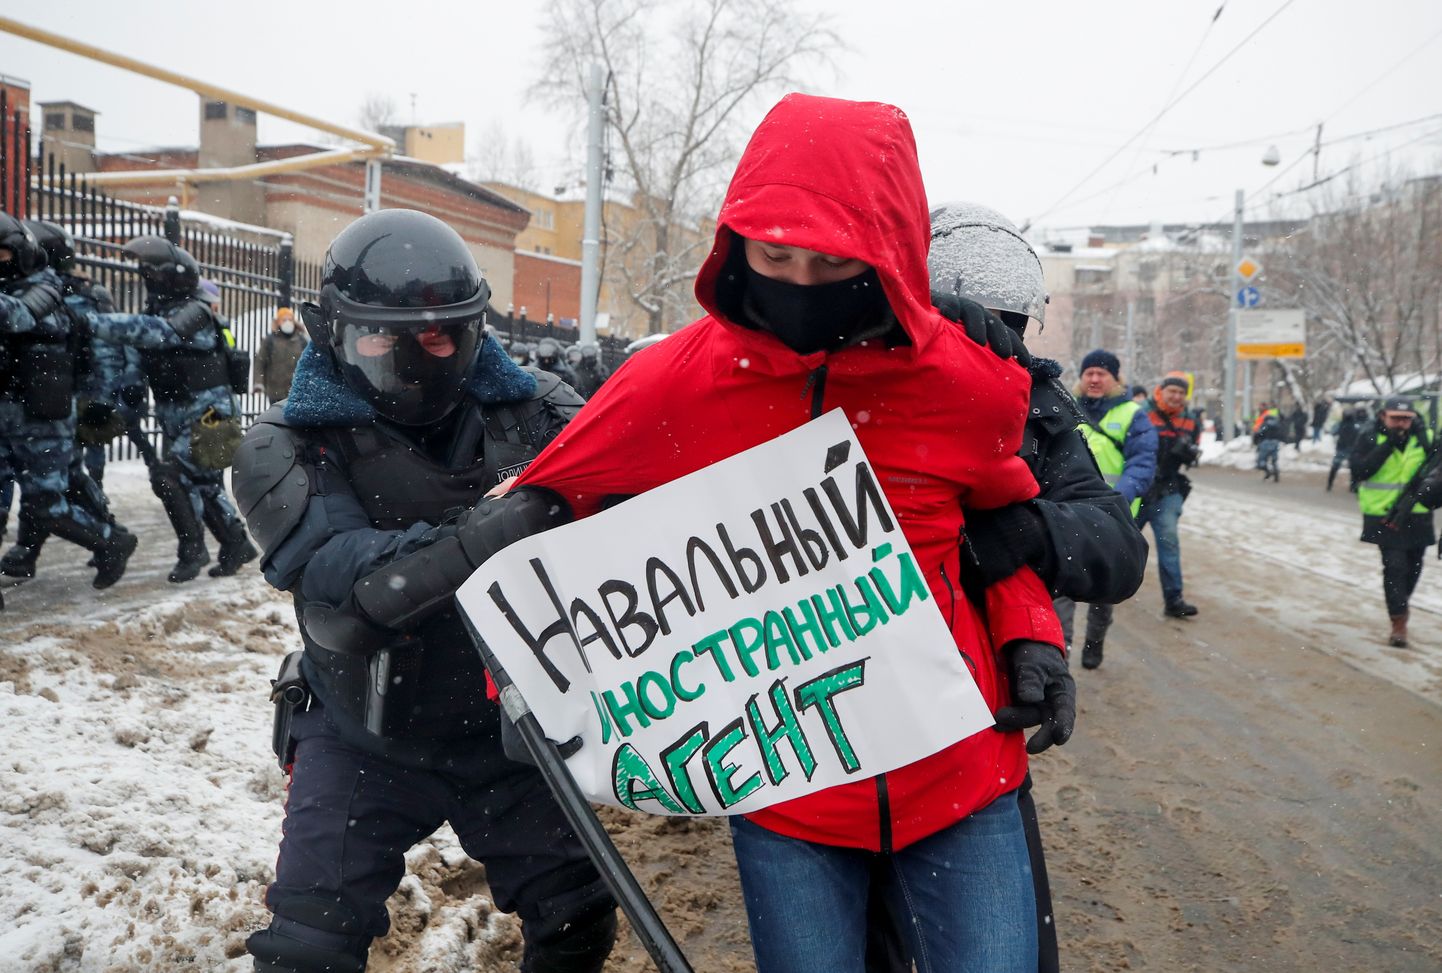 «Navalnõi on välisagent» seisab plakatil, mille oli antud isik toonud opositsioonijuhi Aleksei Navalnõi toetajate meeleavaldusele 2021. aasta jaanuaris.